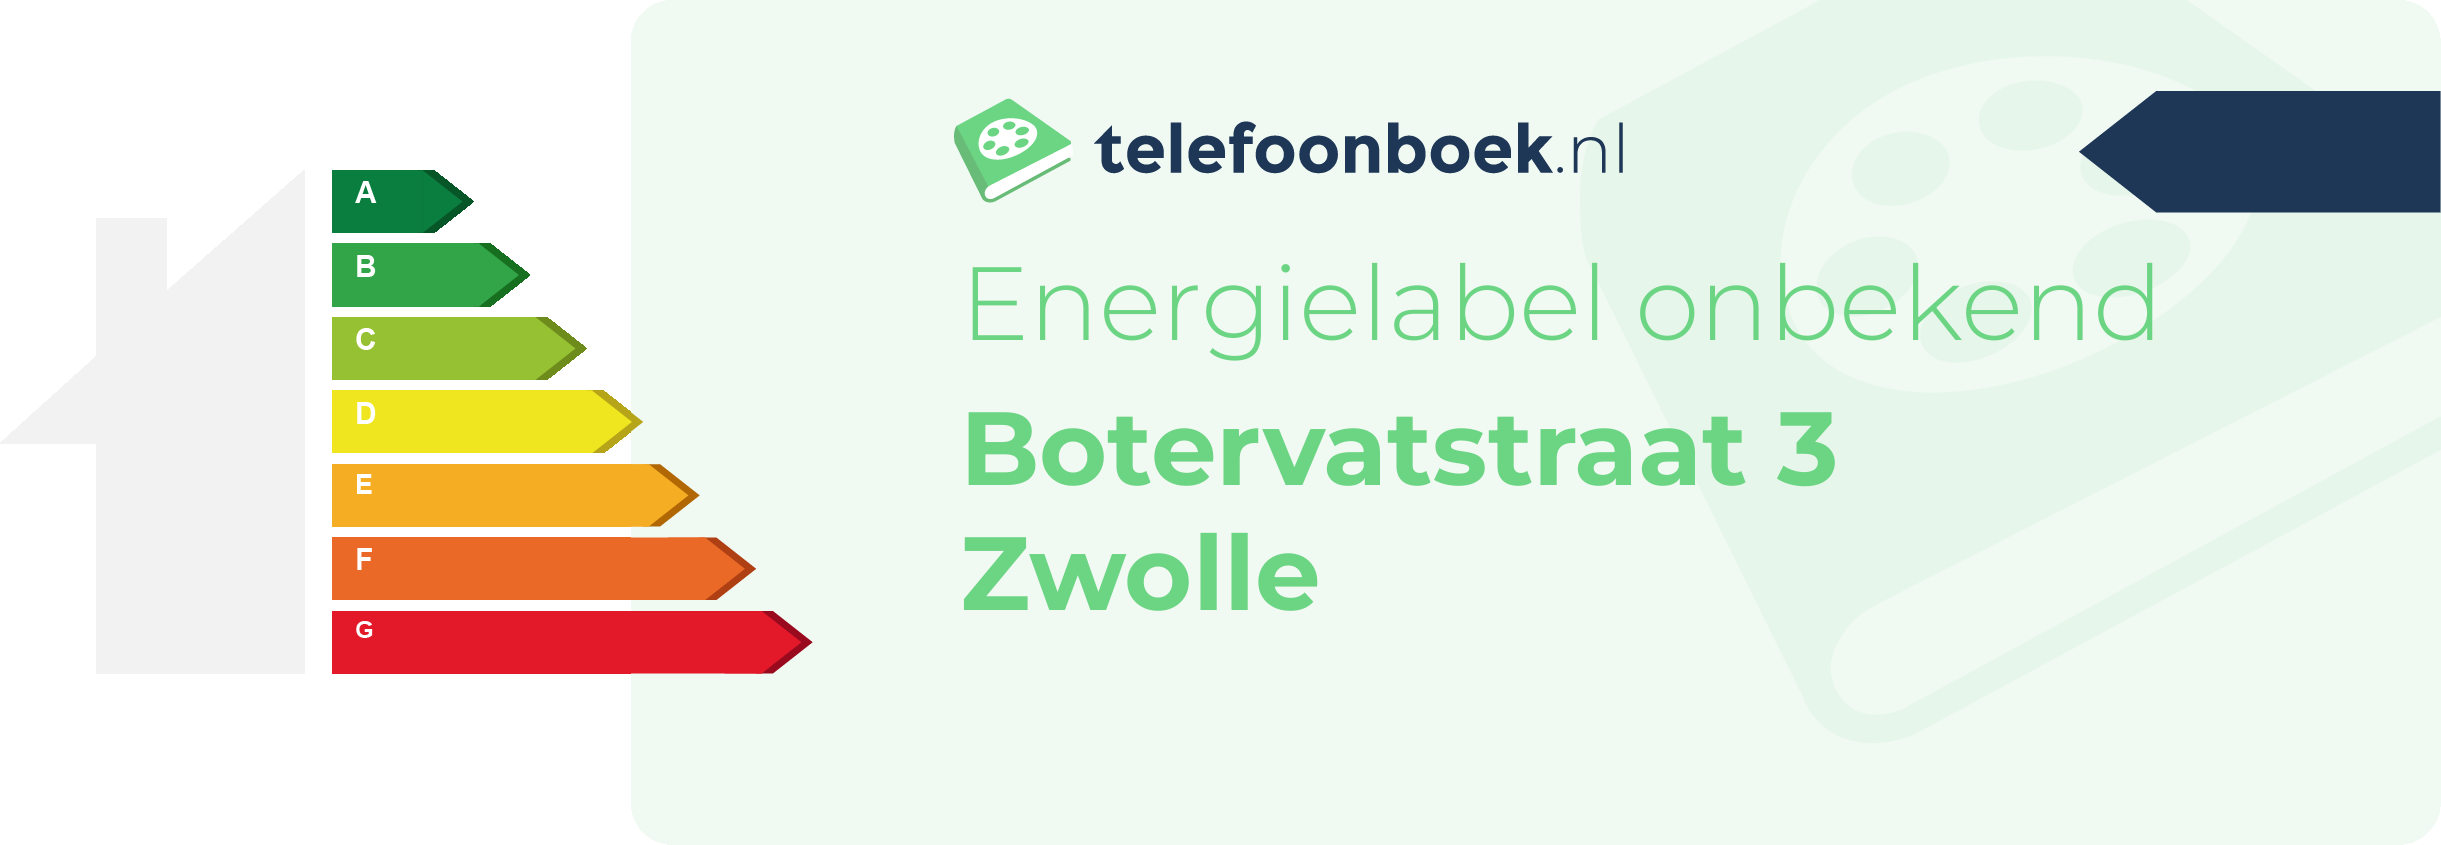 Energielabel Botervatstraat 3 Zwolle